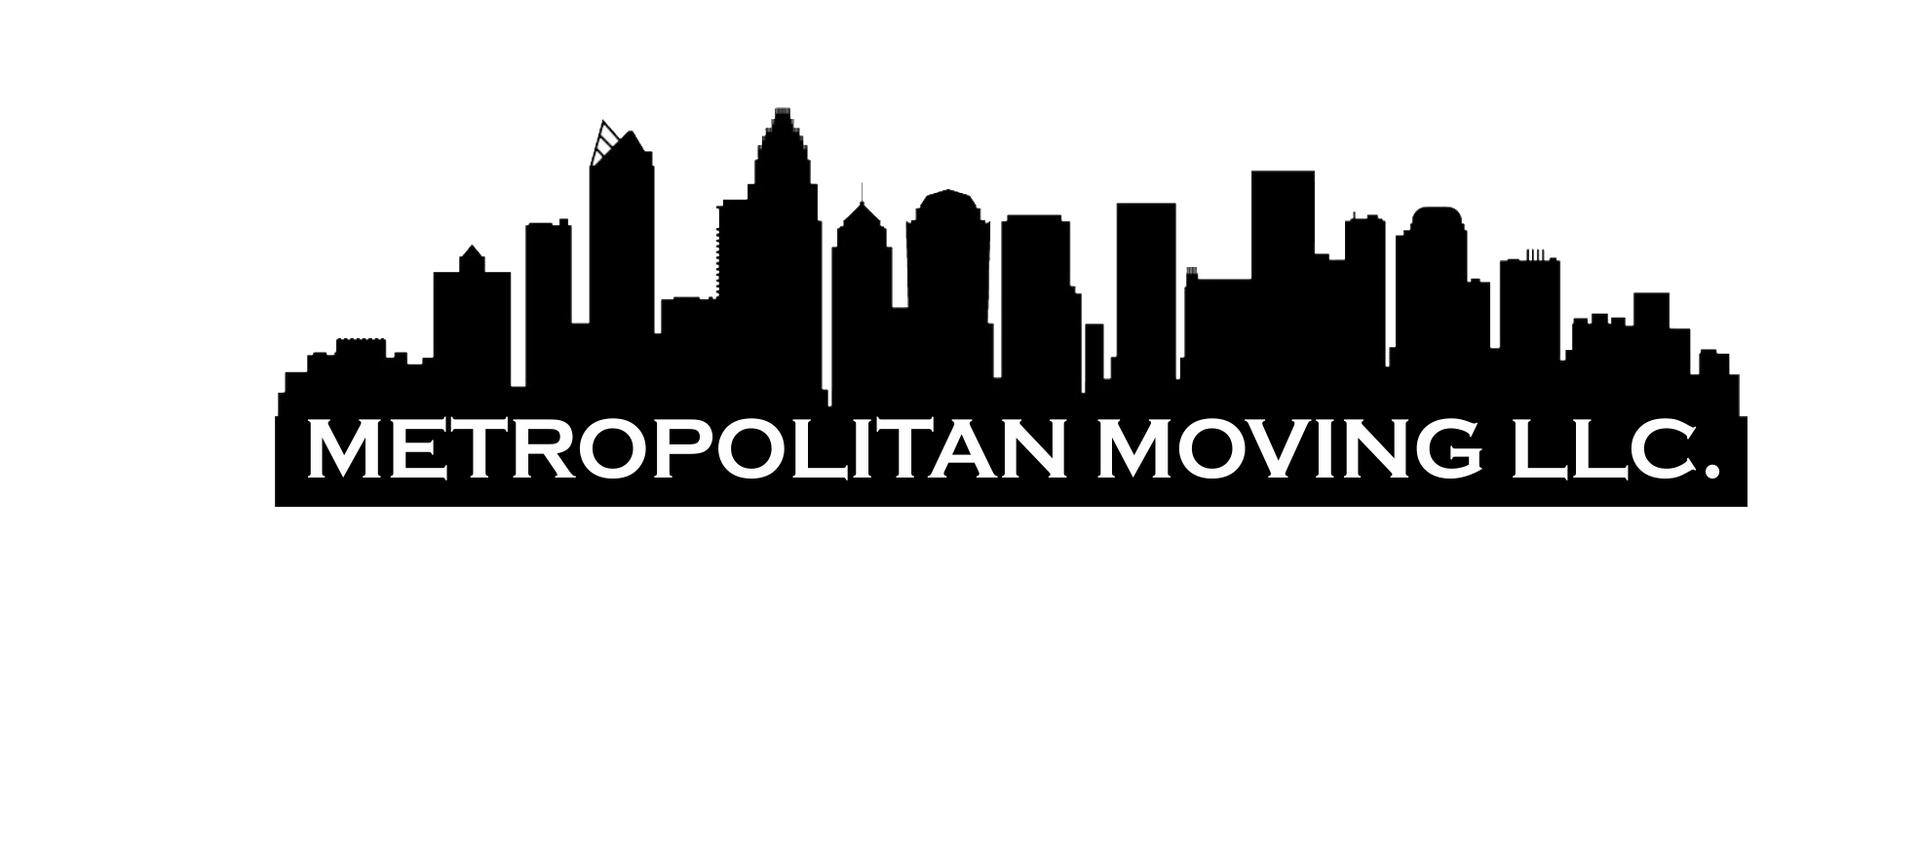 Metropolitan Moving LLC Logo